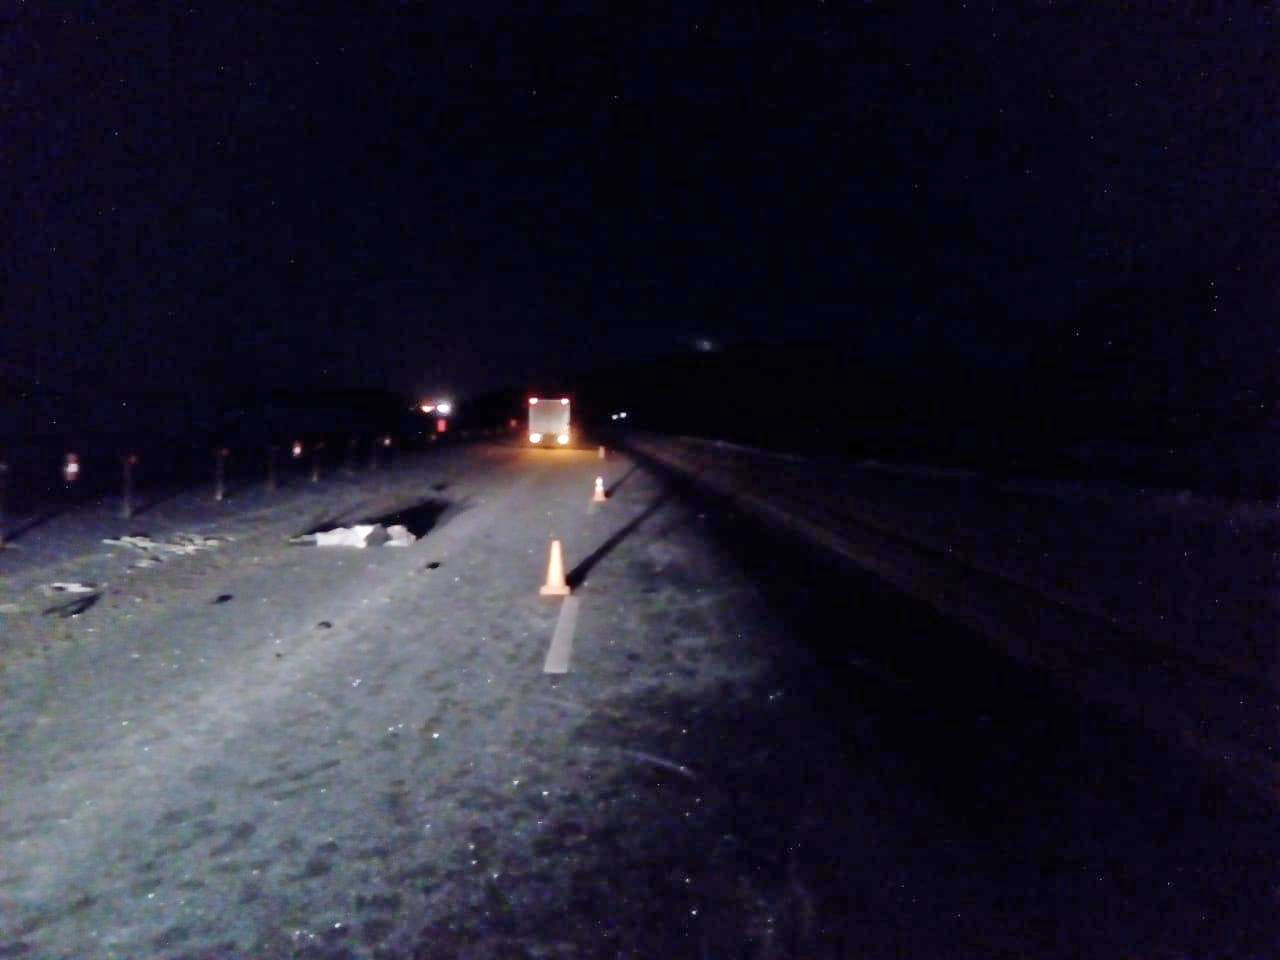 21 в декабре 6. Авария в Никифоровском районе Тамбовской области. Мистика на трассе. Авария в темноте на трассе. Фото аварии ночью на трассе.